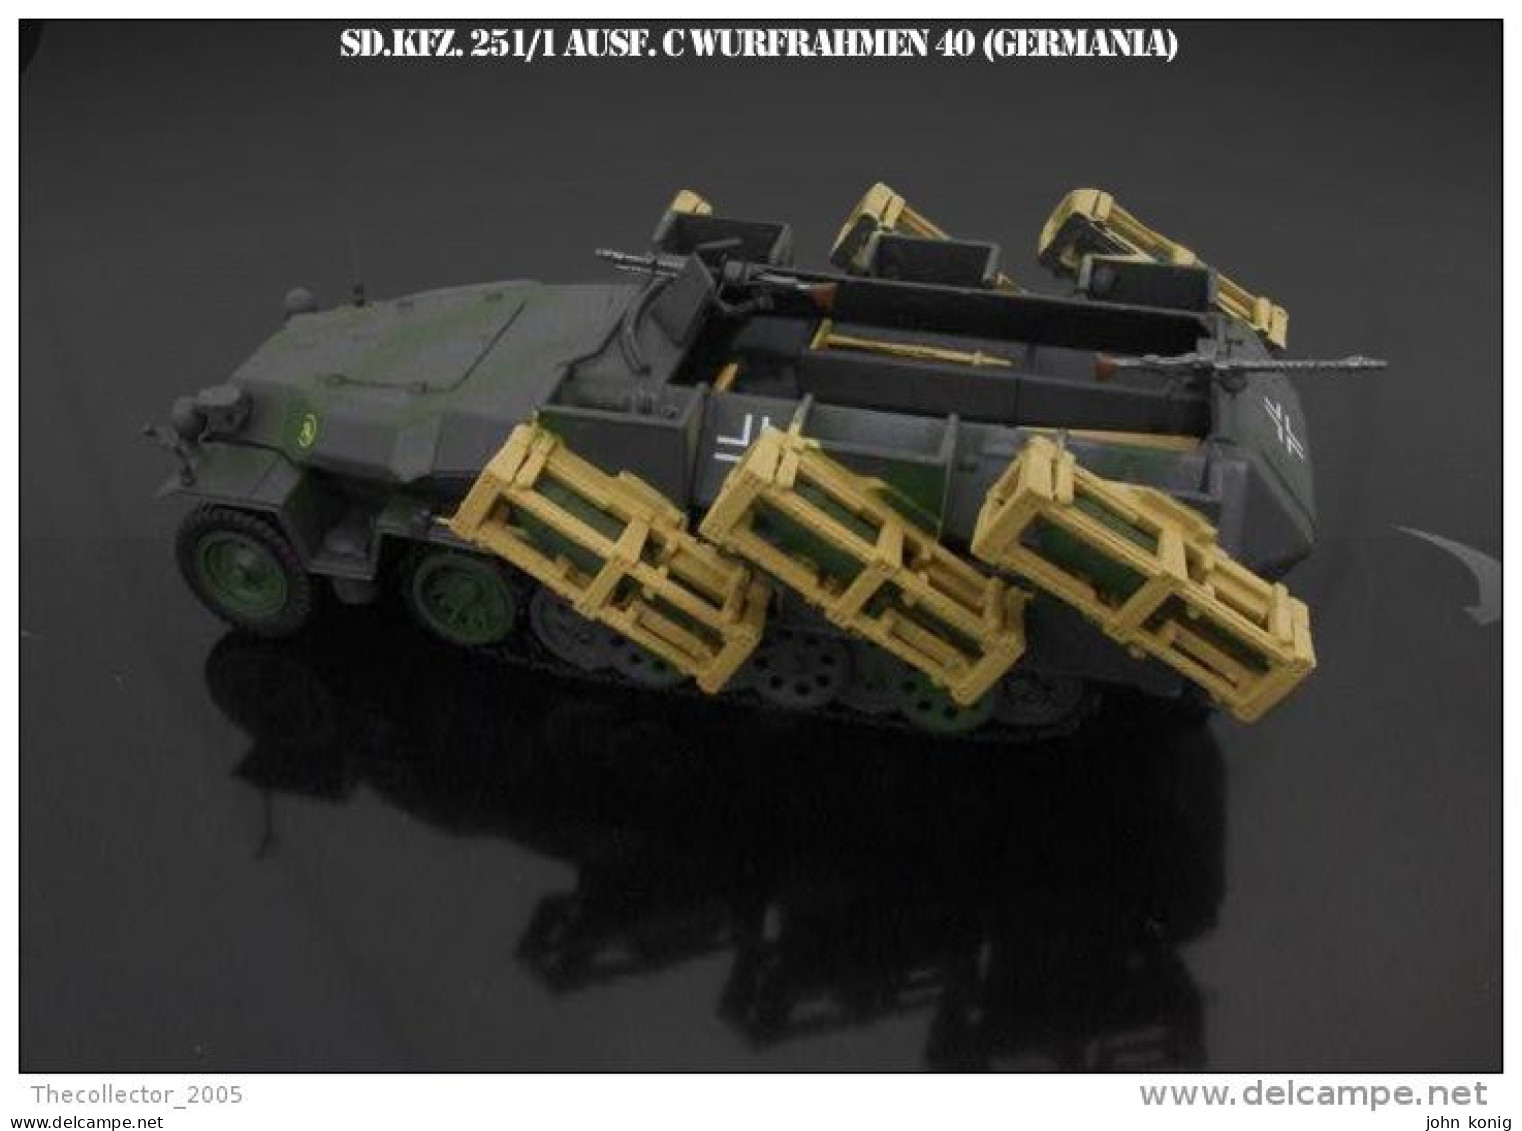 MILITARY DIE CAST MODEL (CARRO ARMATO-MEZZI MILITARI-ARMOURED TANK) - SD.KFZ.251-1 AUSF. C MIT WURFRAHMEN 40-SCALA 1:43 - Panzer